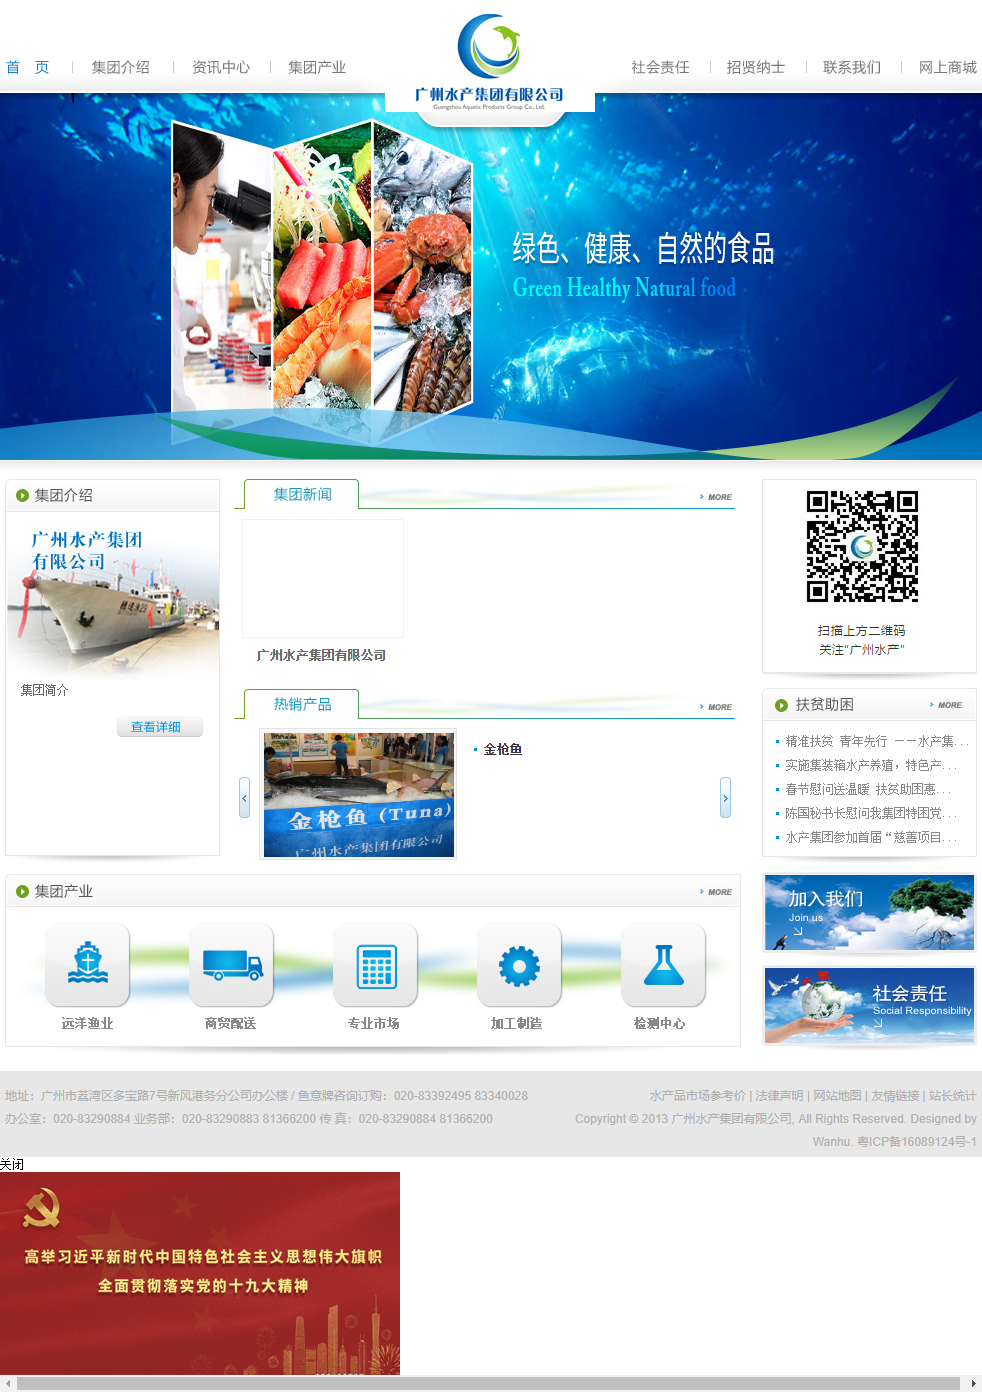 广州水产集团有限公司网站案例